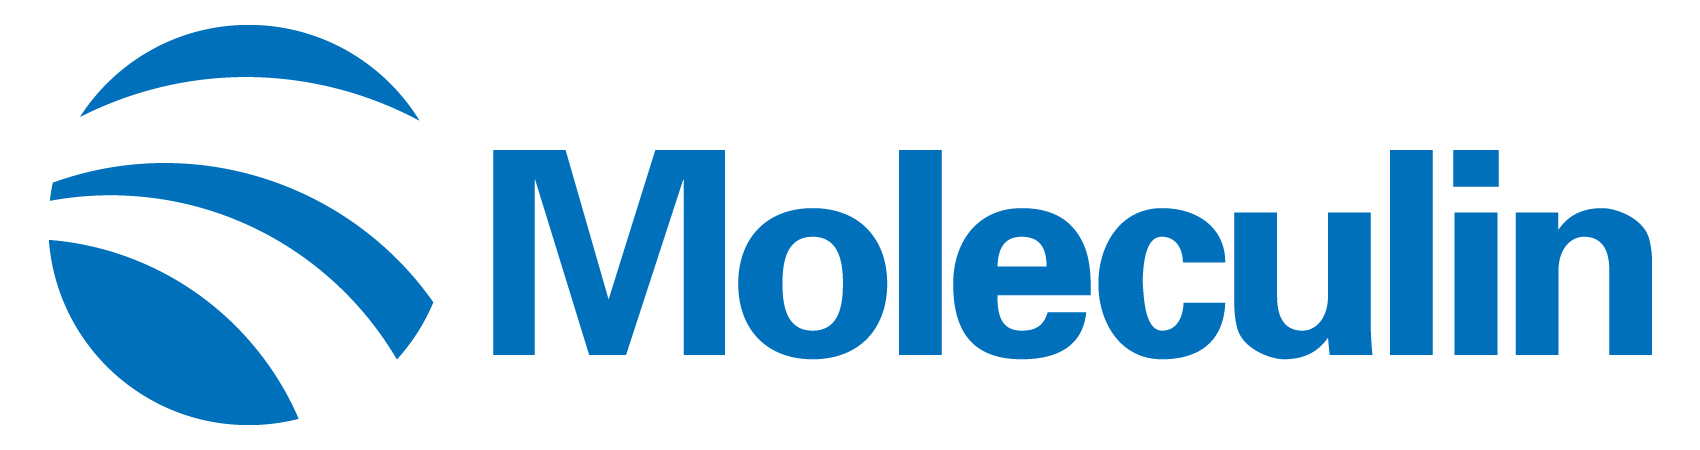 moleculin-logo_horiza21.jpg